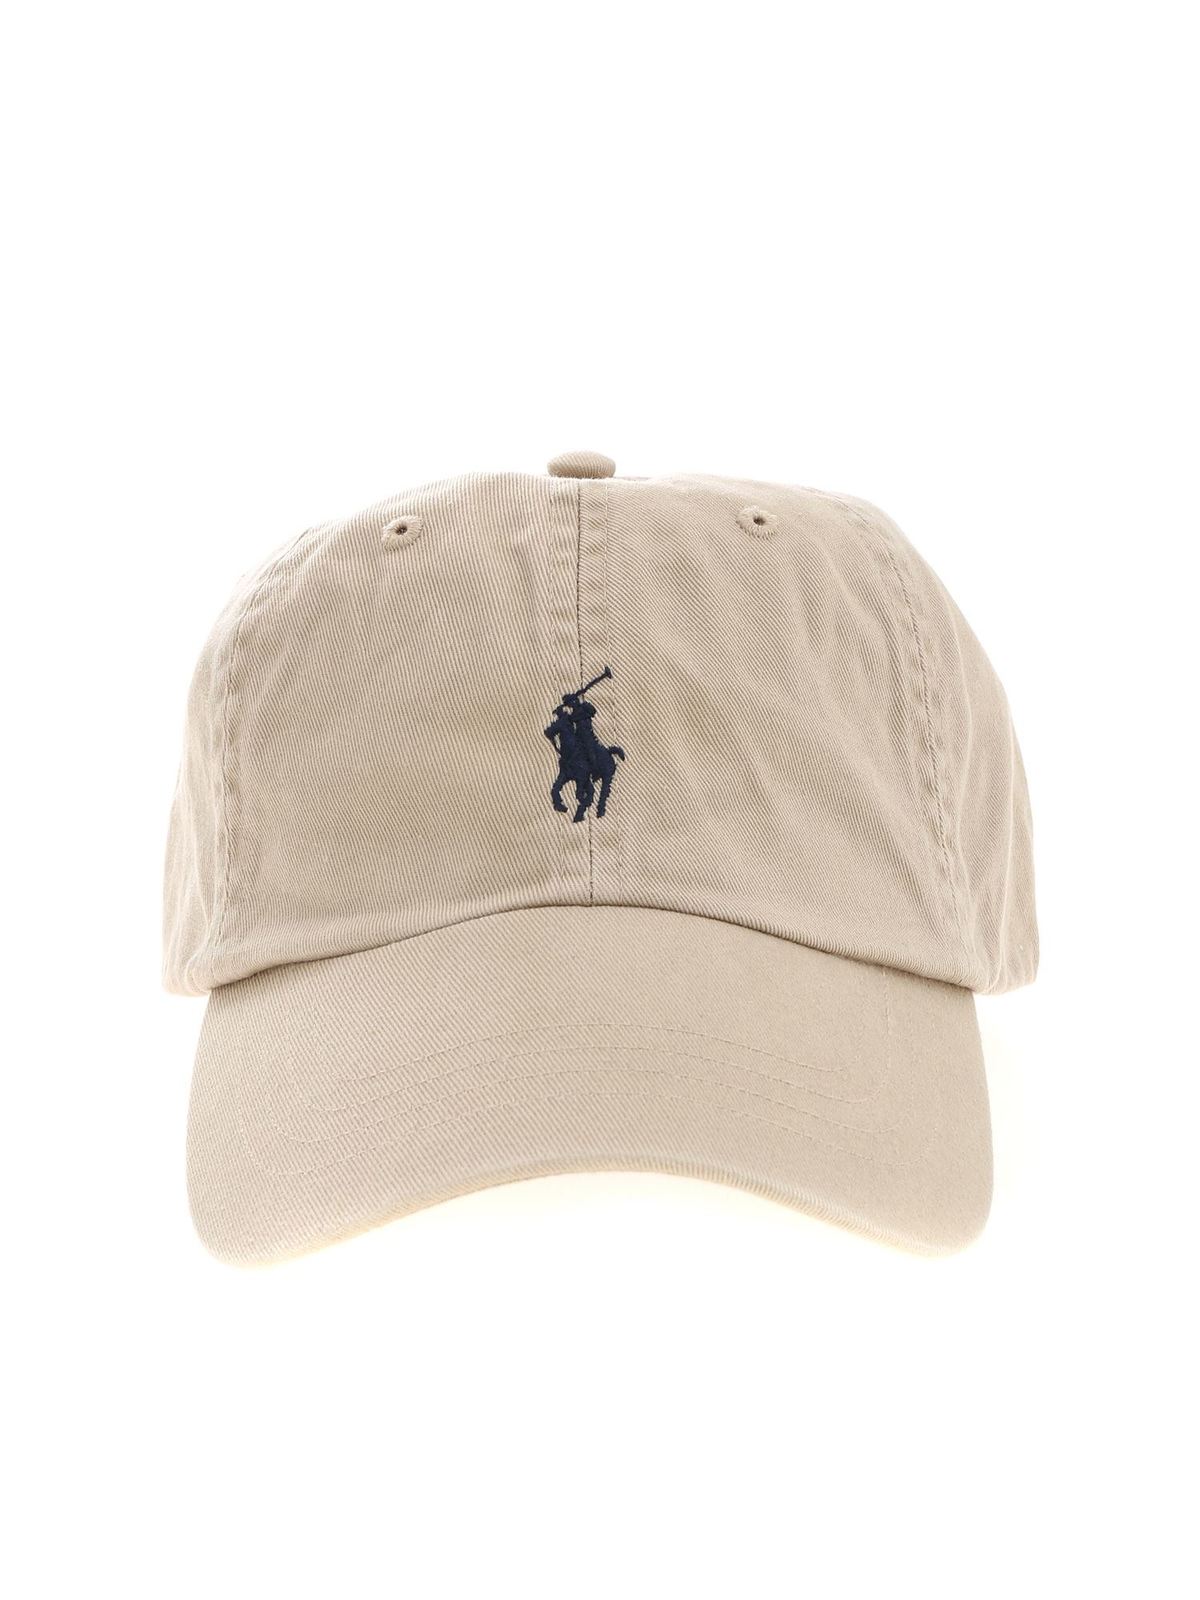 Hats & caps Polo - in logo cap - beige Lauren 710548524005 Baseball with Ralph